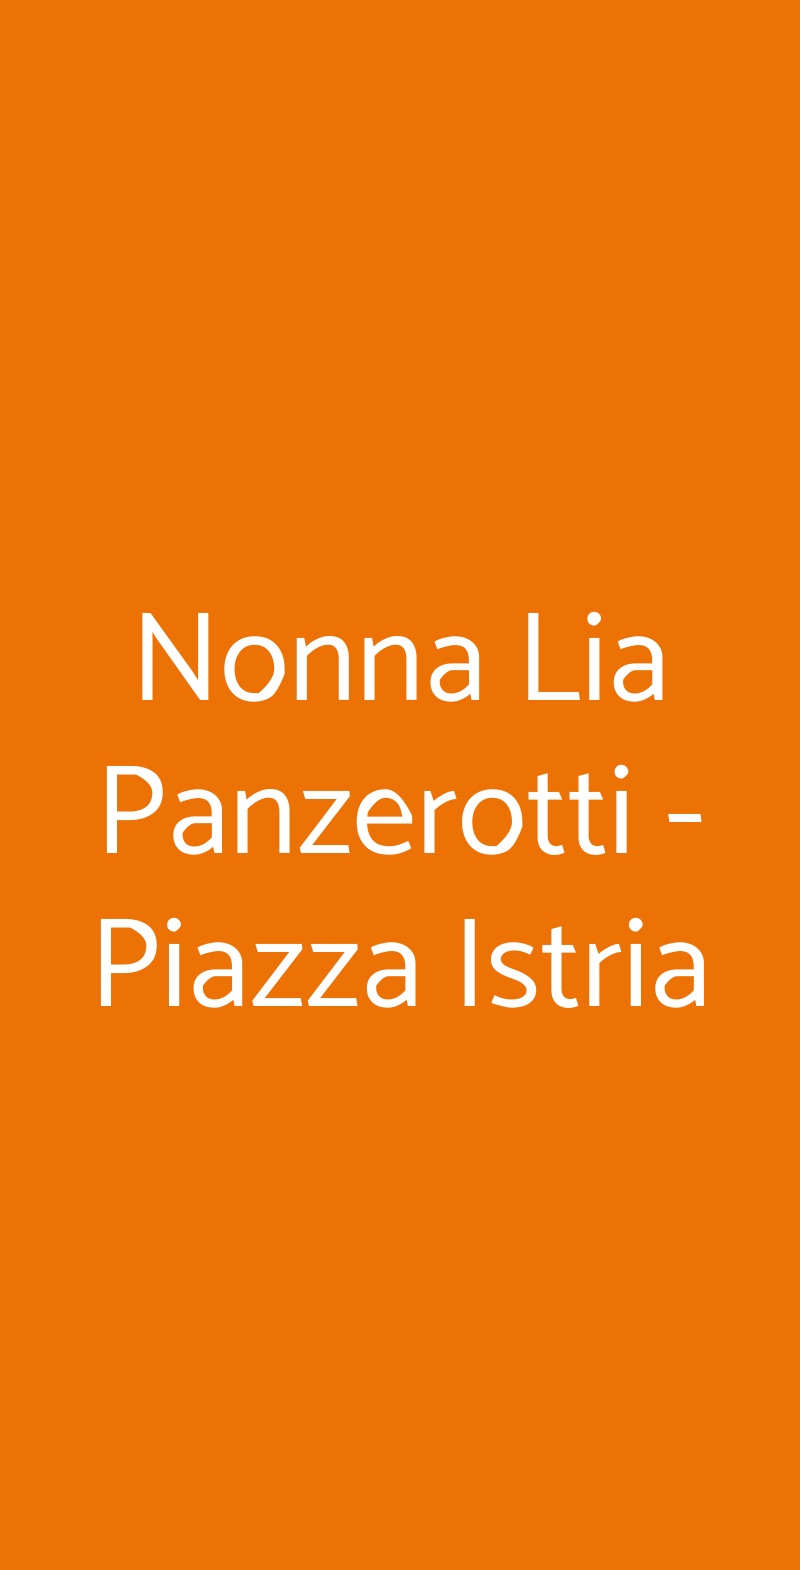 Nonna Lia Panzerotti - Piazza Istria Roma menù 1 pagina